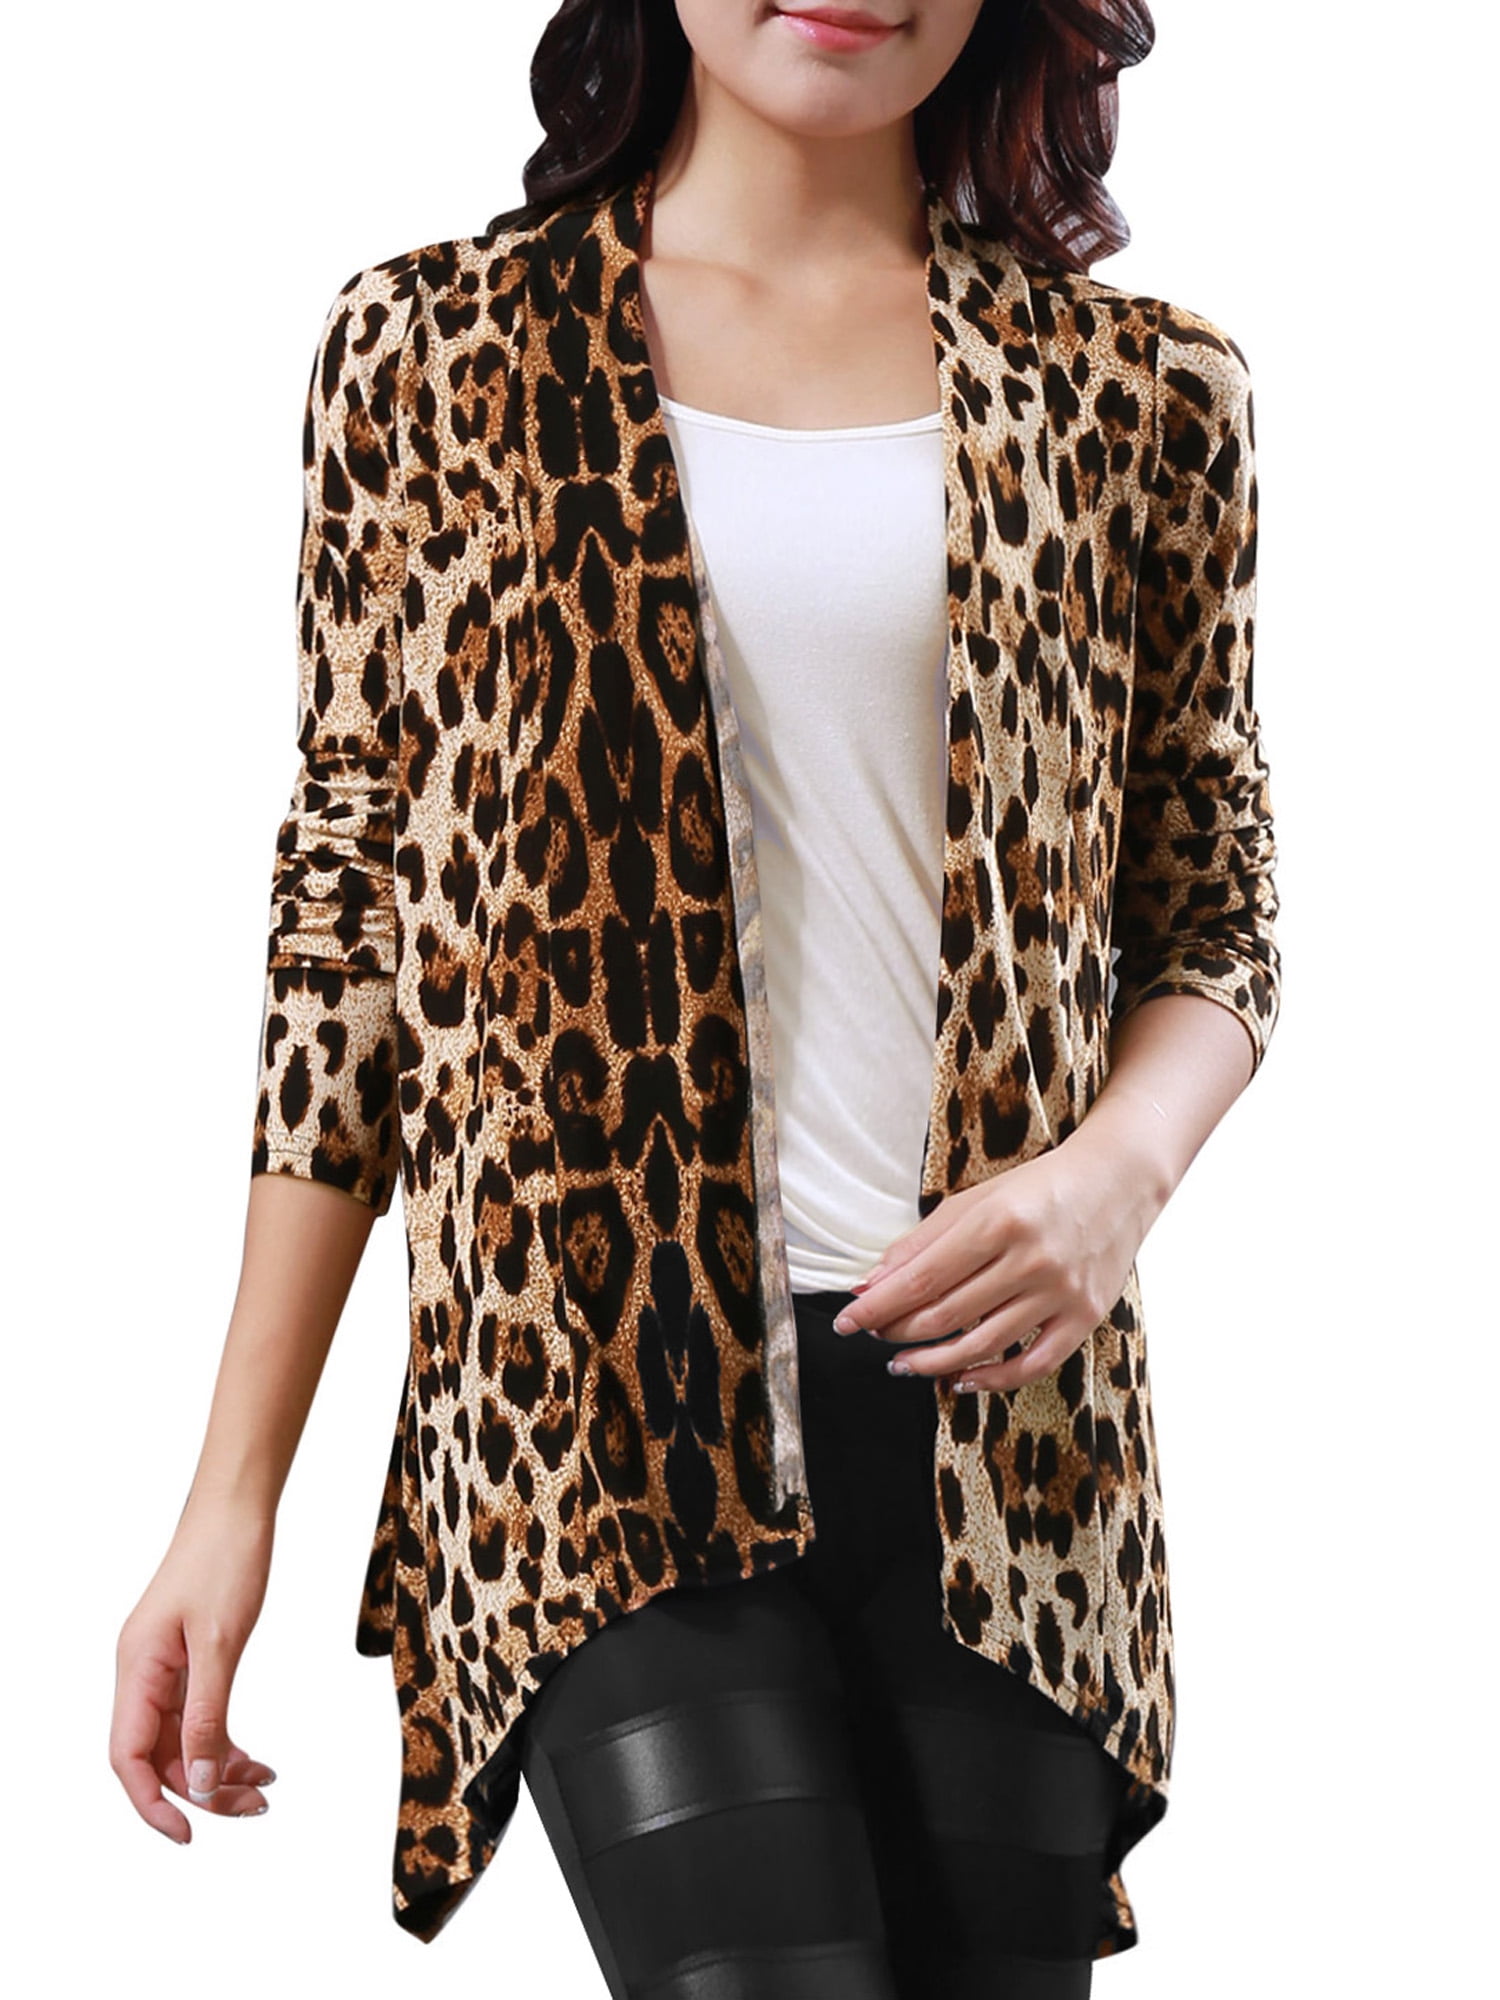 Buy > leopard boyfriend cardigan > in stock